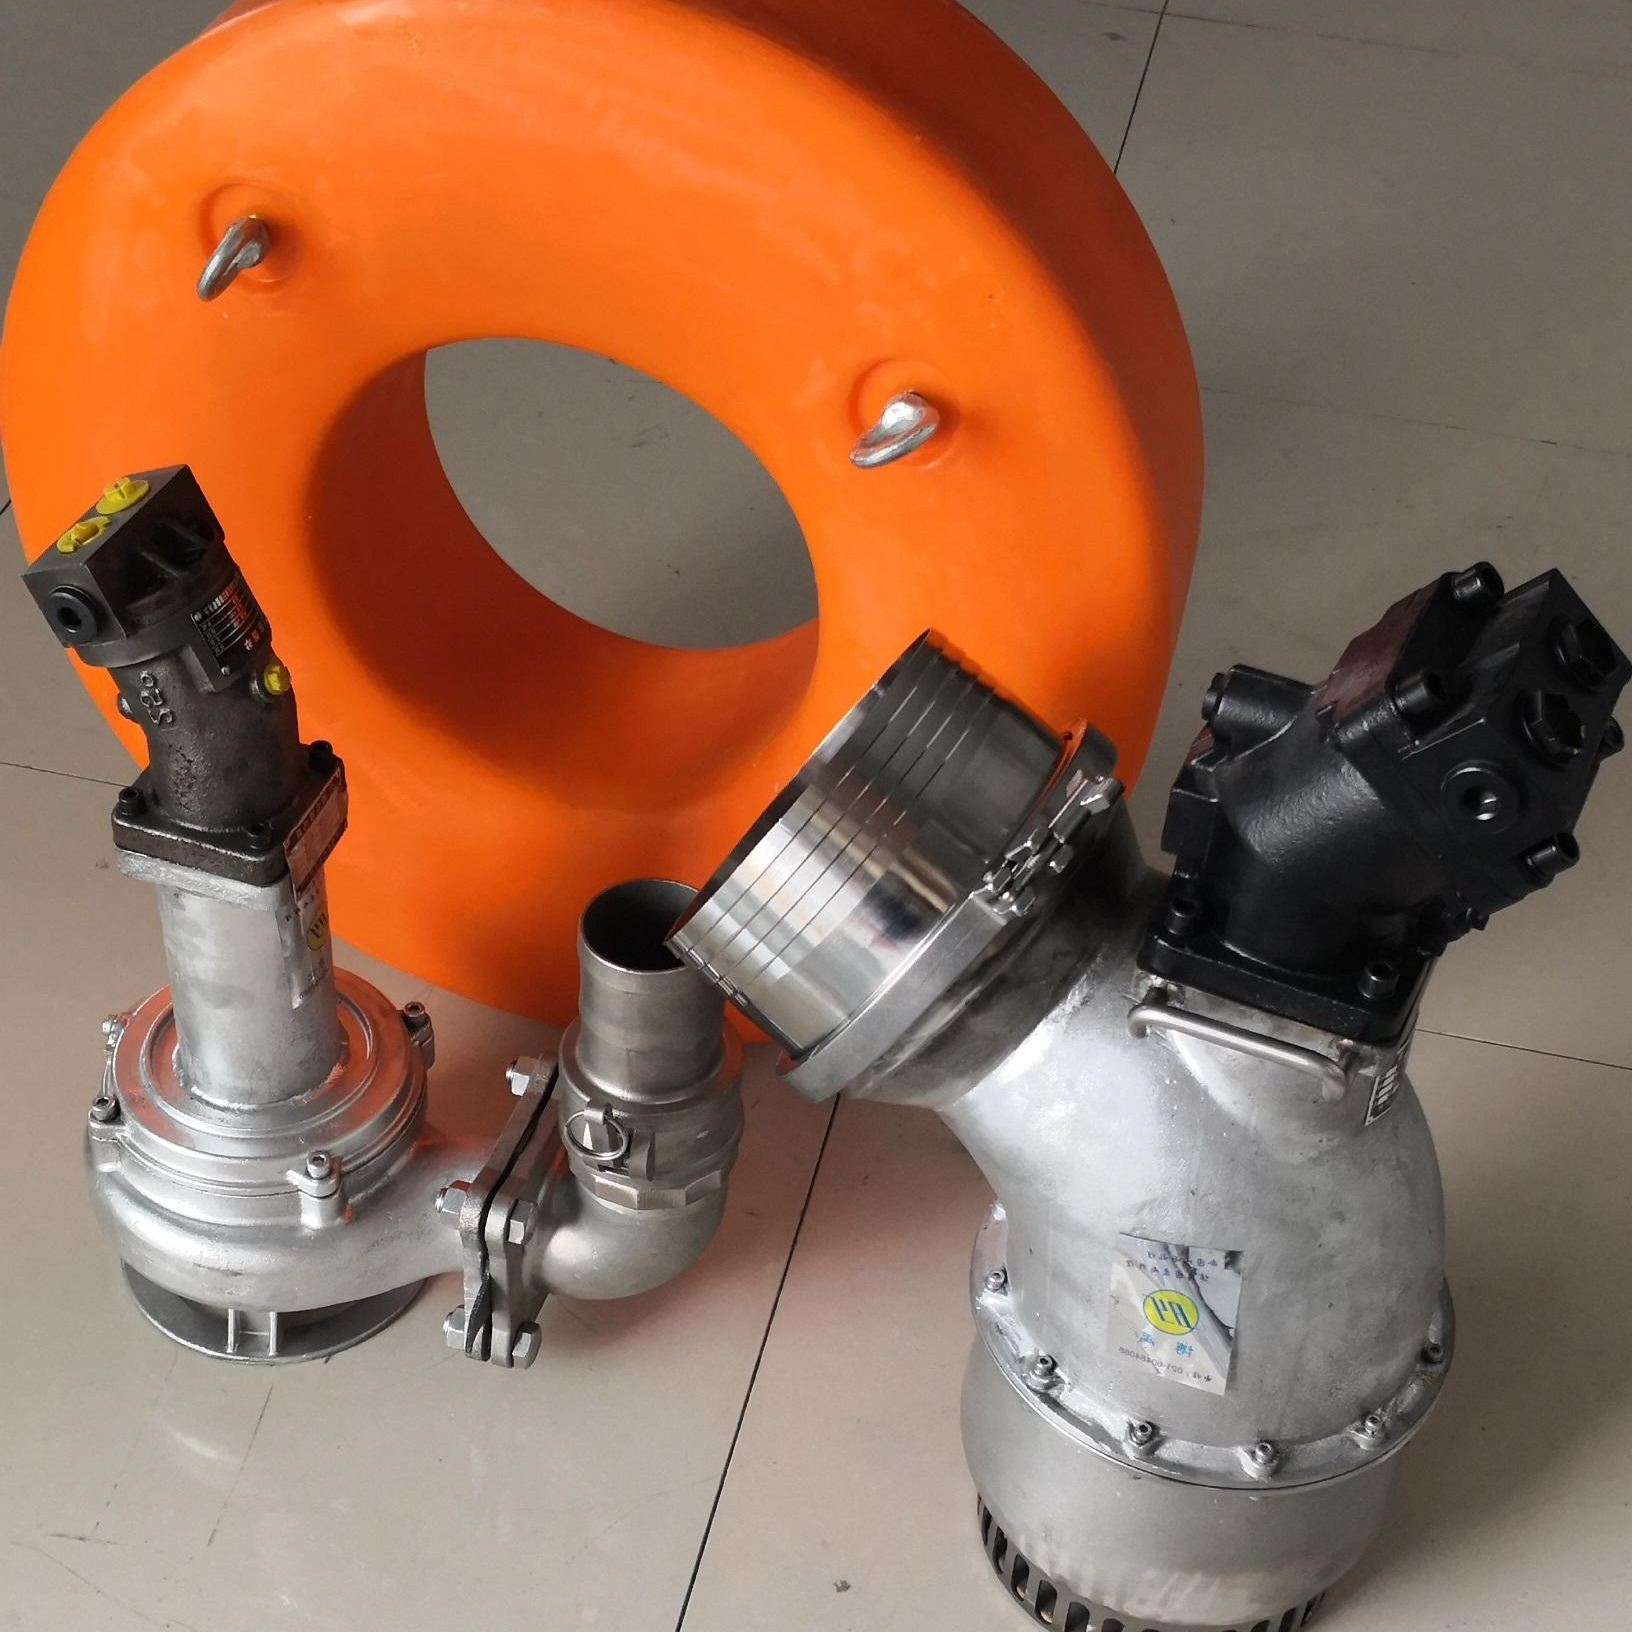 大流量液压驱动潜水泵 便携式液压驱动潜水泵 液压驱动潜水泵 液压驱动潜水泵厂家图片